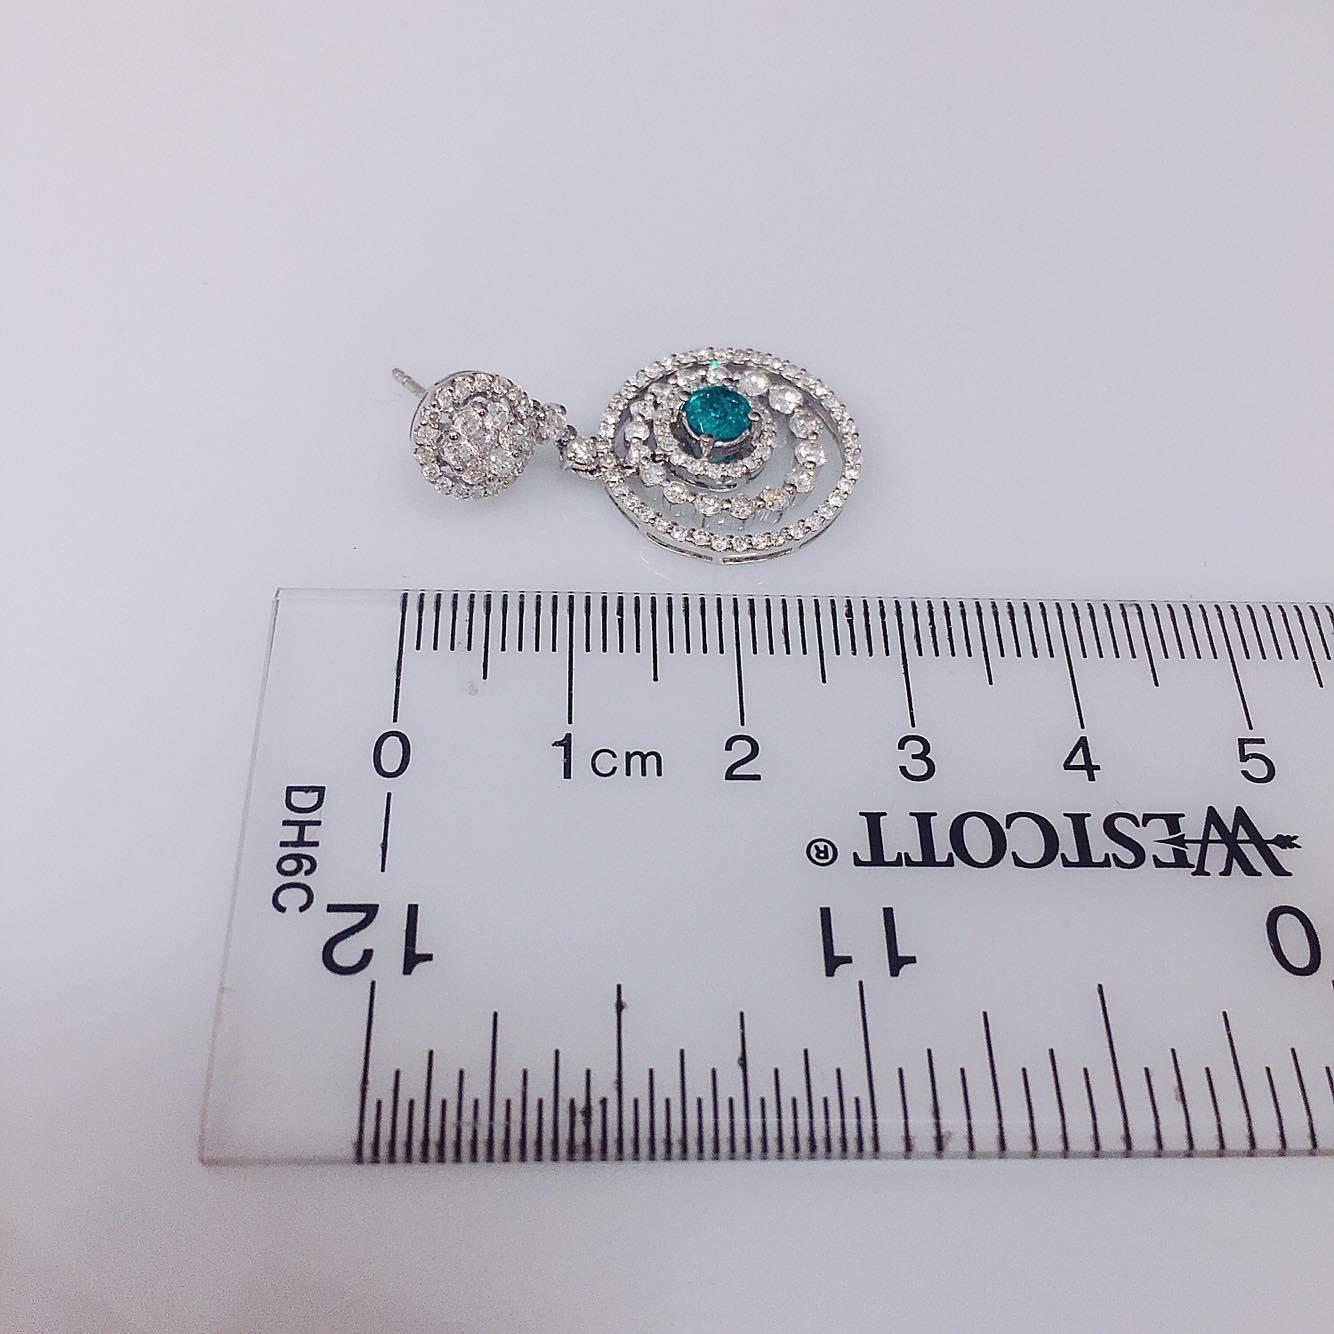 Emerald Cut Emilio Jewelry 3.12 Carat Emerald Diamond Earrings For Sale